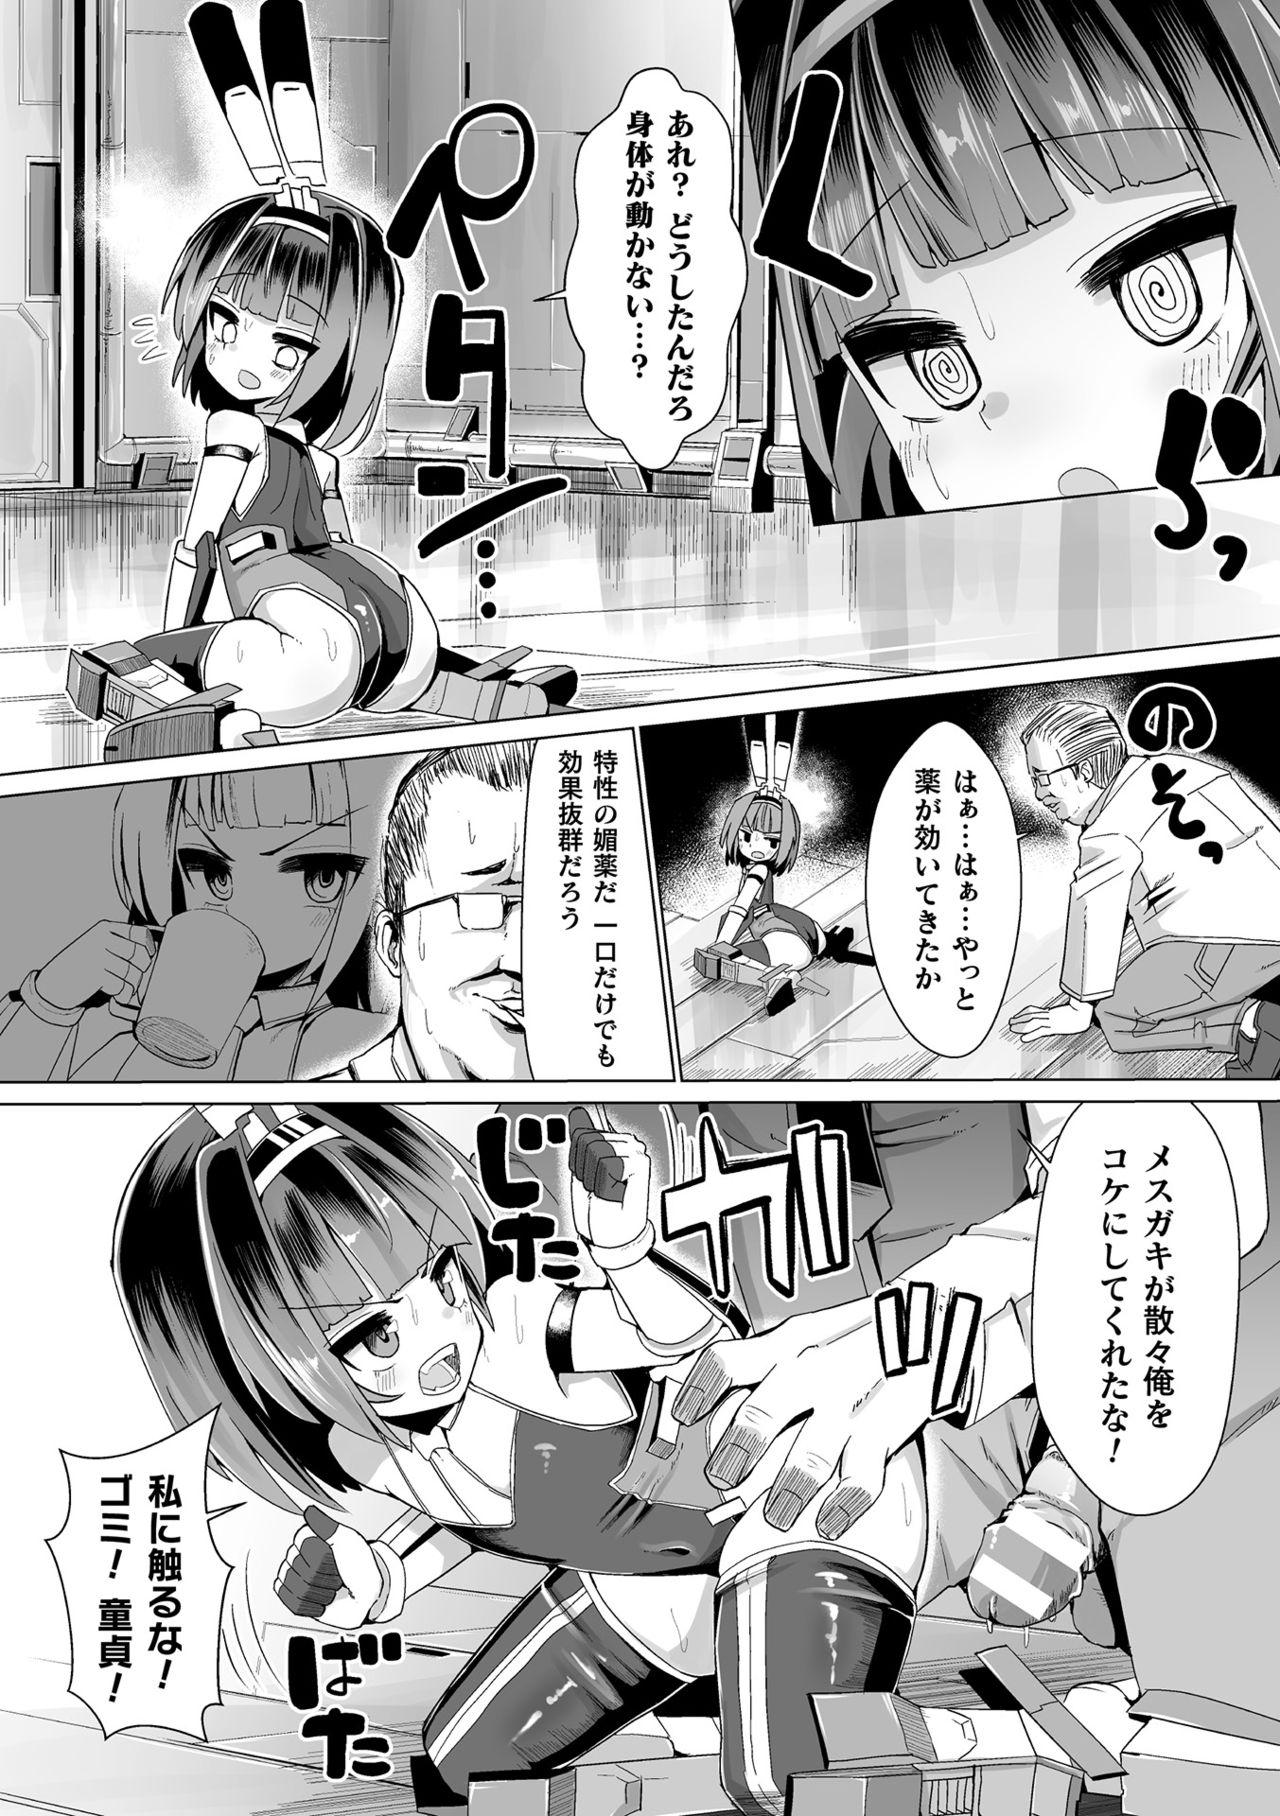 Vip 2D Comic Magazine Mesugaki Henshin Heroine Seisai Wakarase-bou ni wa Katemasen deshita! Vol. 2 Emo - Page 12